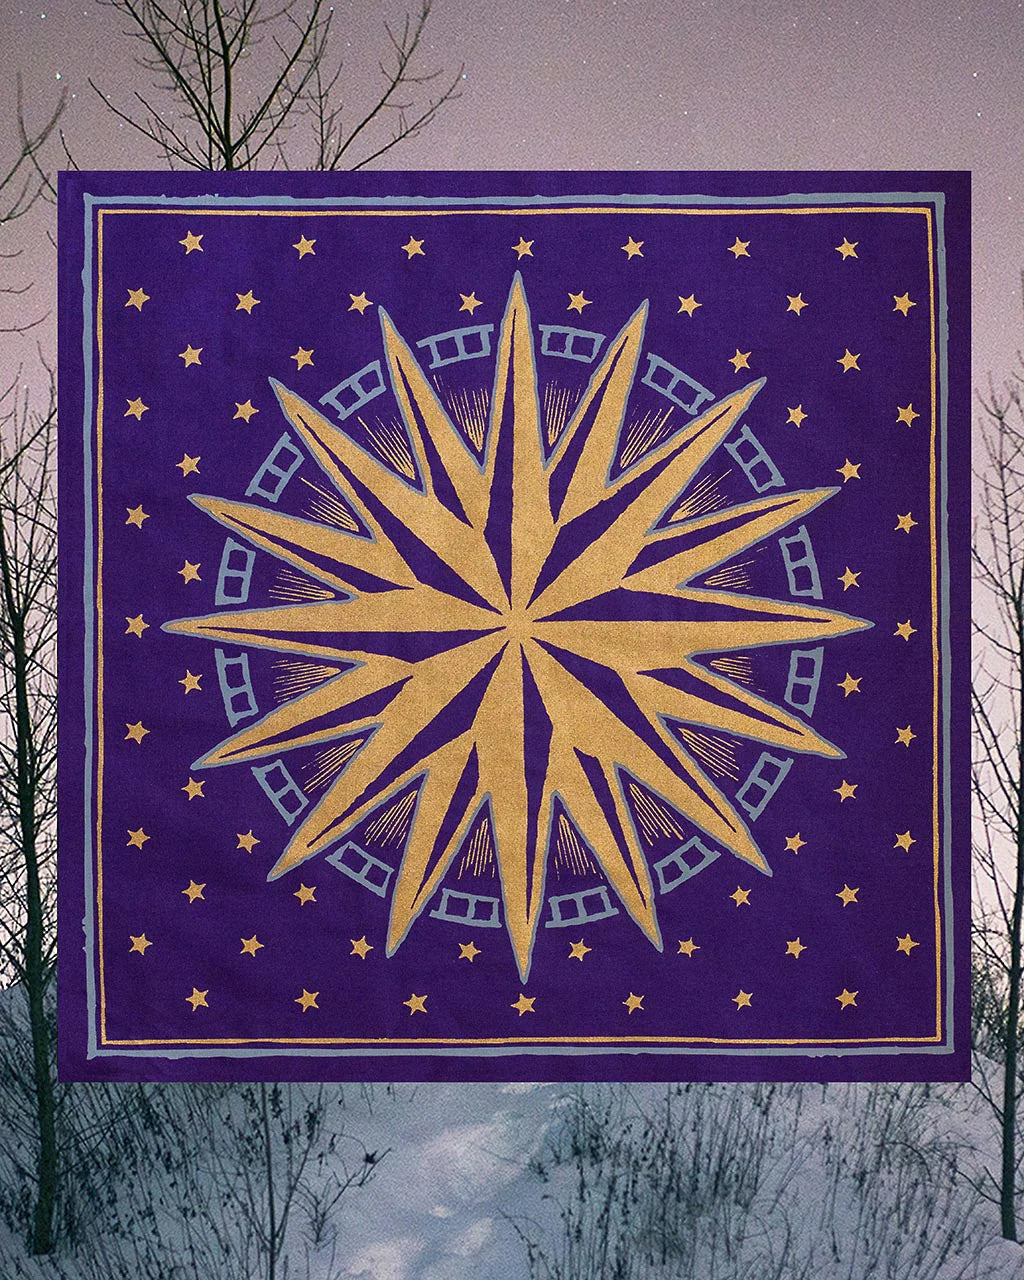 The Star Altar Cloth